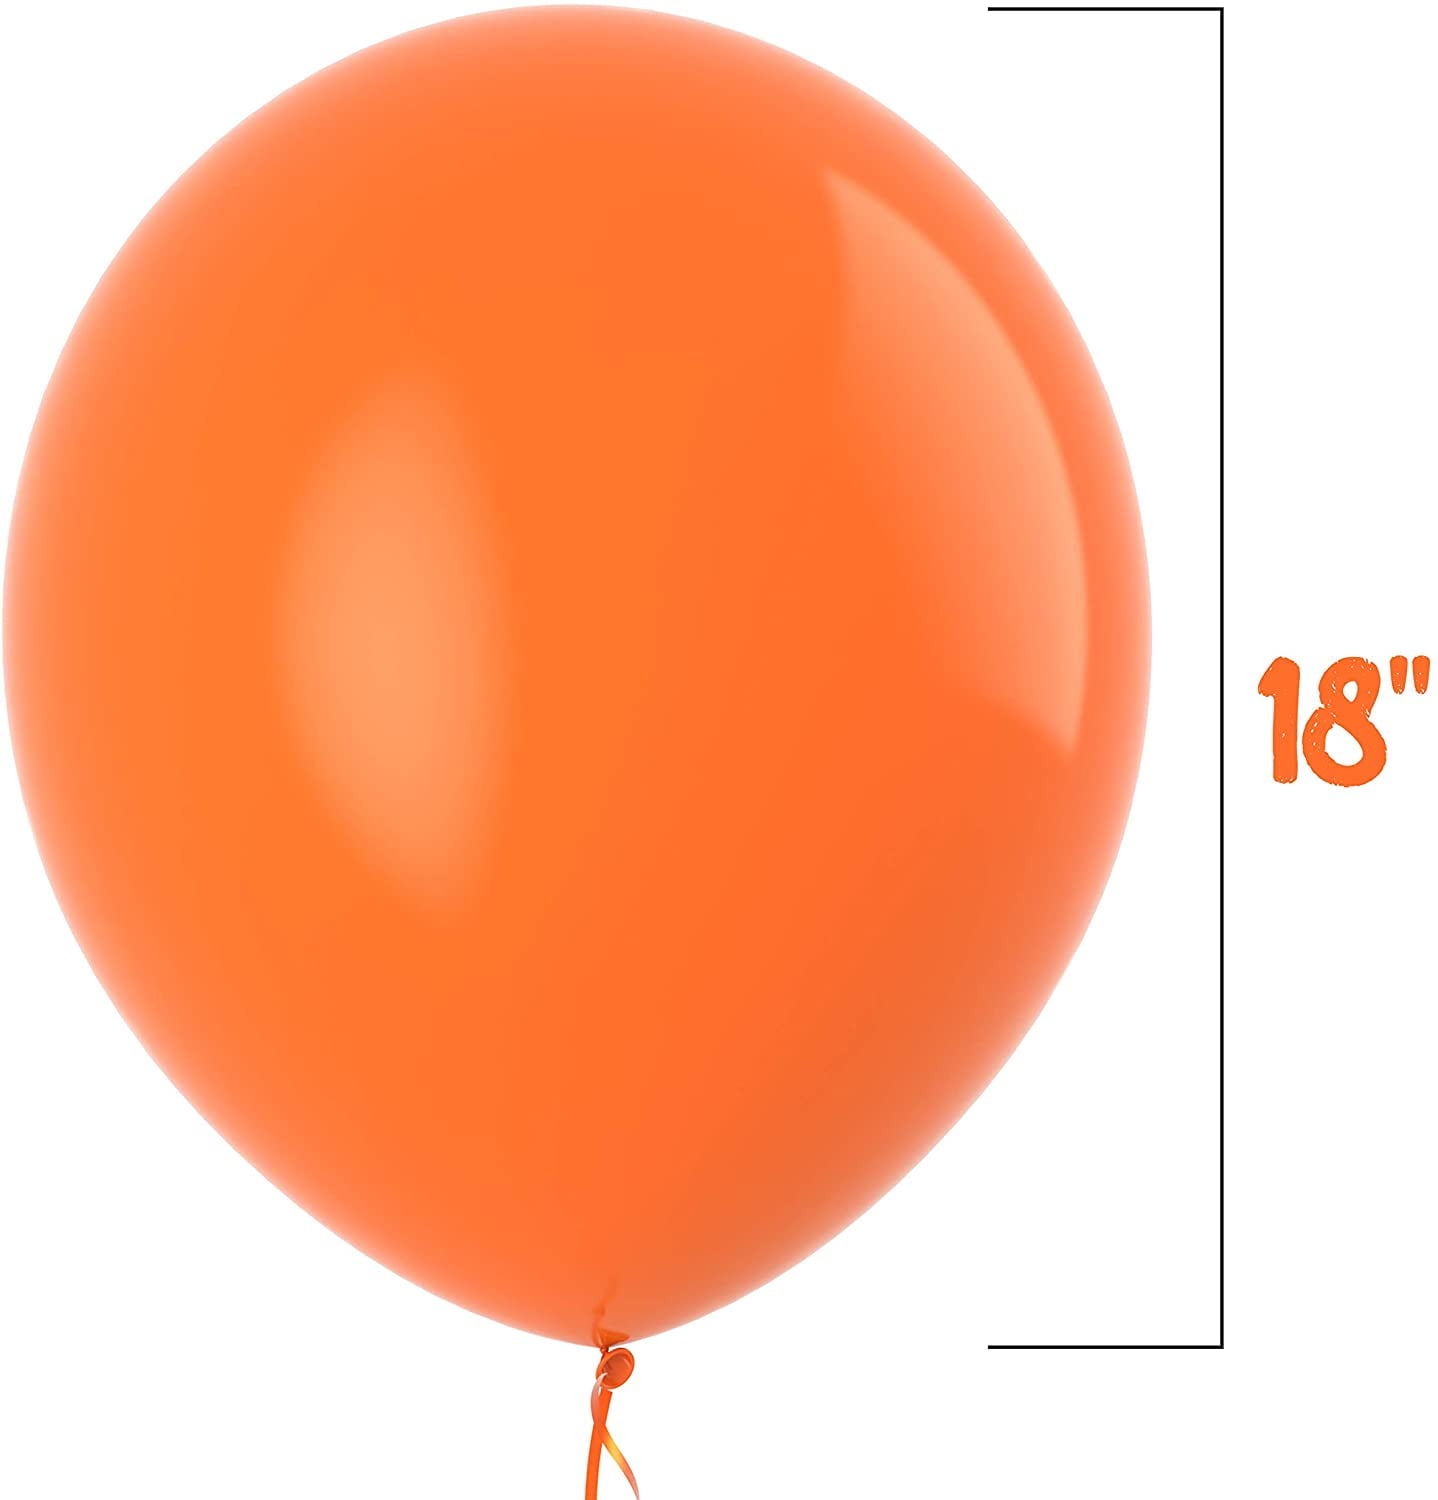 Ballons Ø 30 cm Oranges x 100 unités